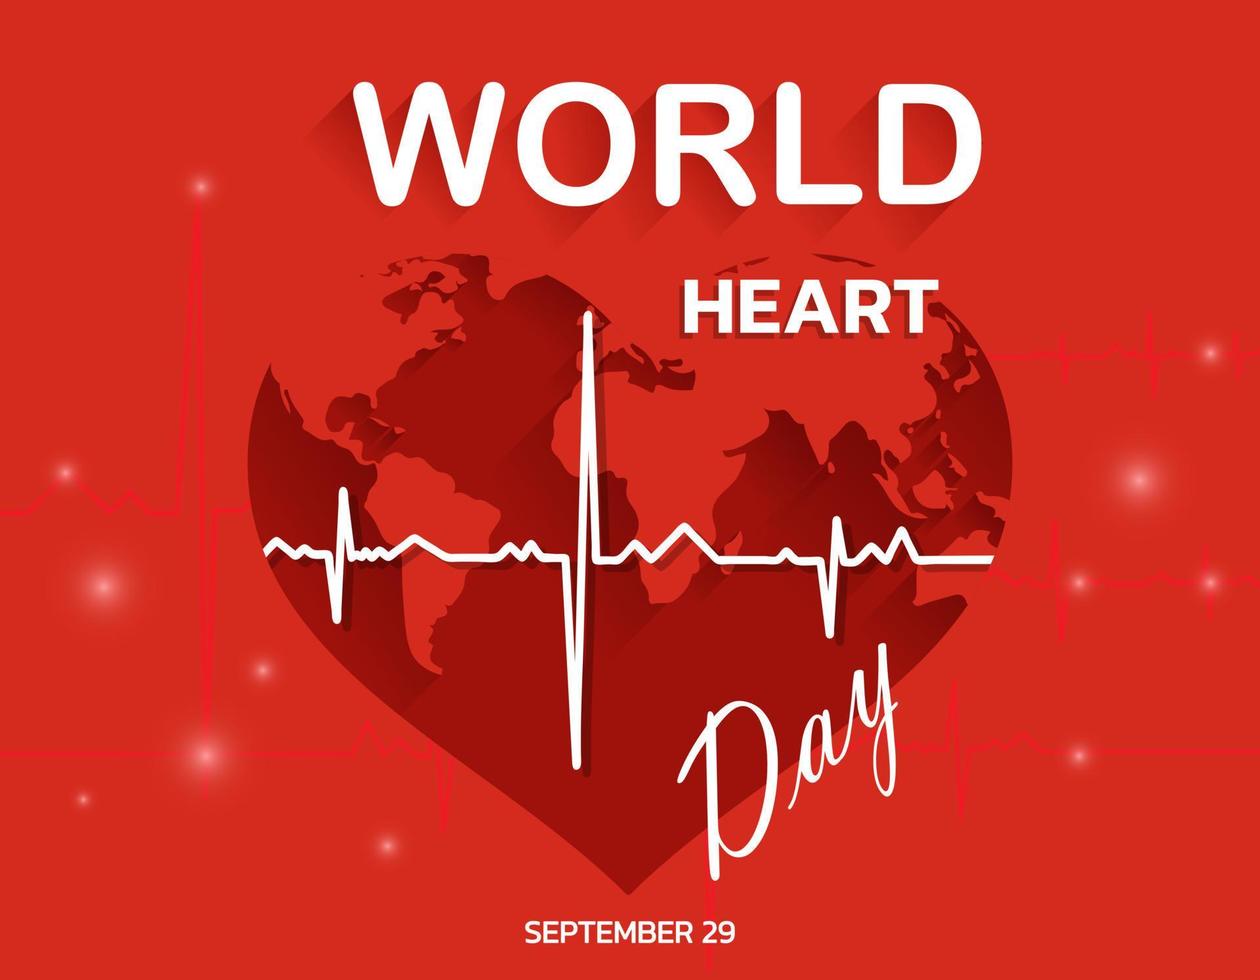 ilustração vetorial, pôster ou banner para o dia mundial do coração vetor